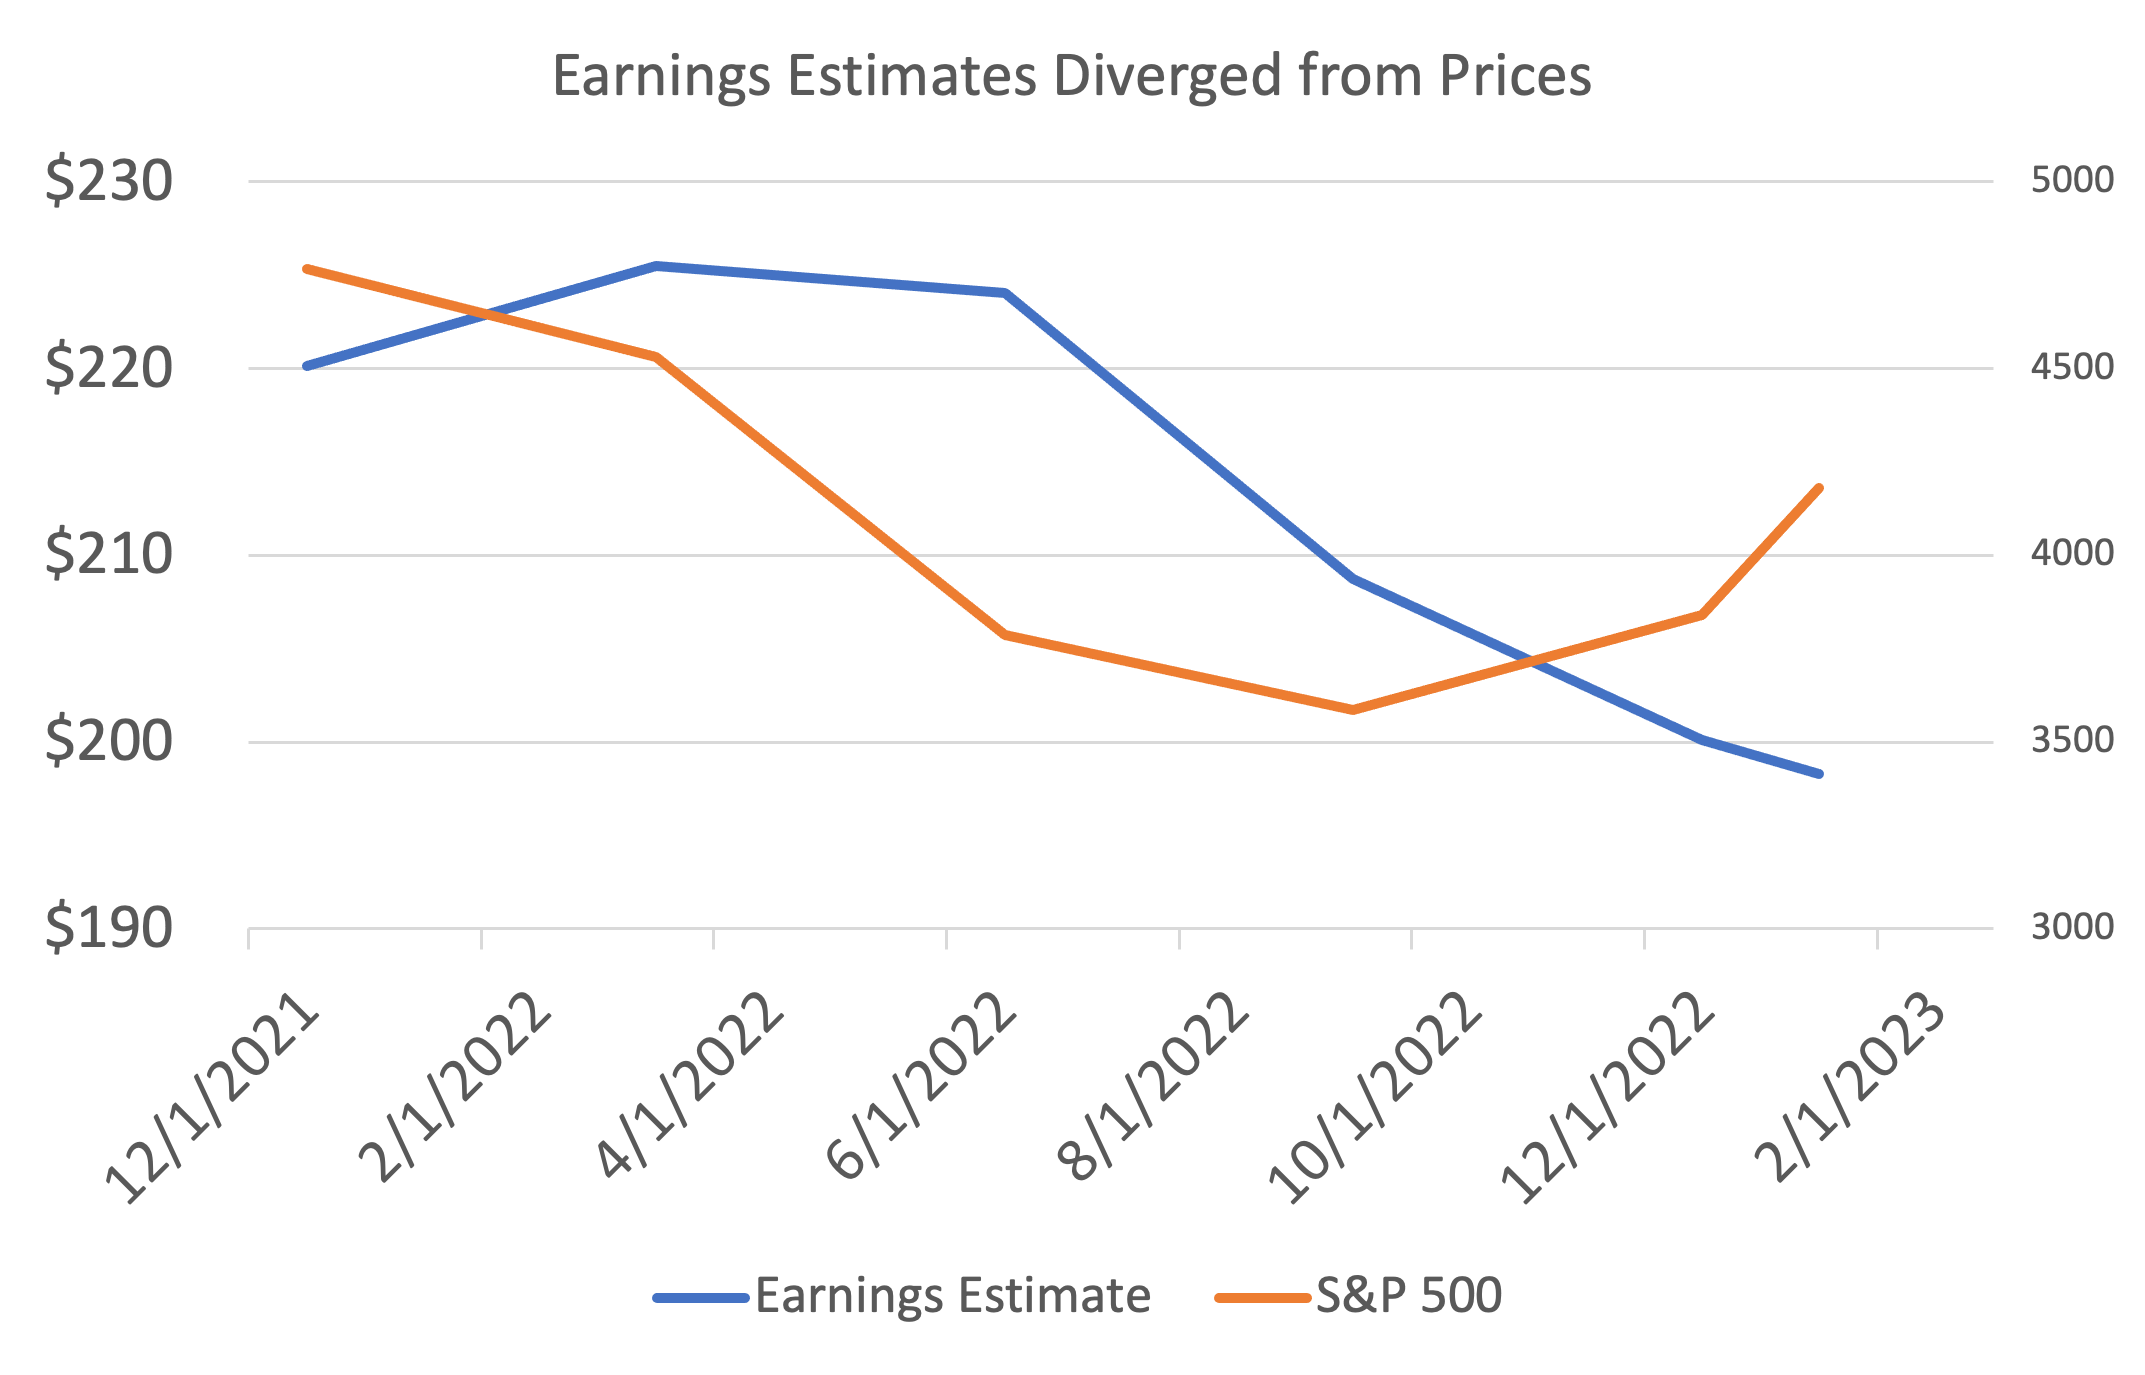 2023 earnings estimates are raised.